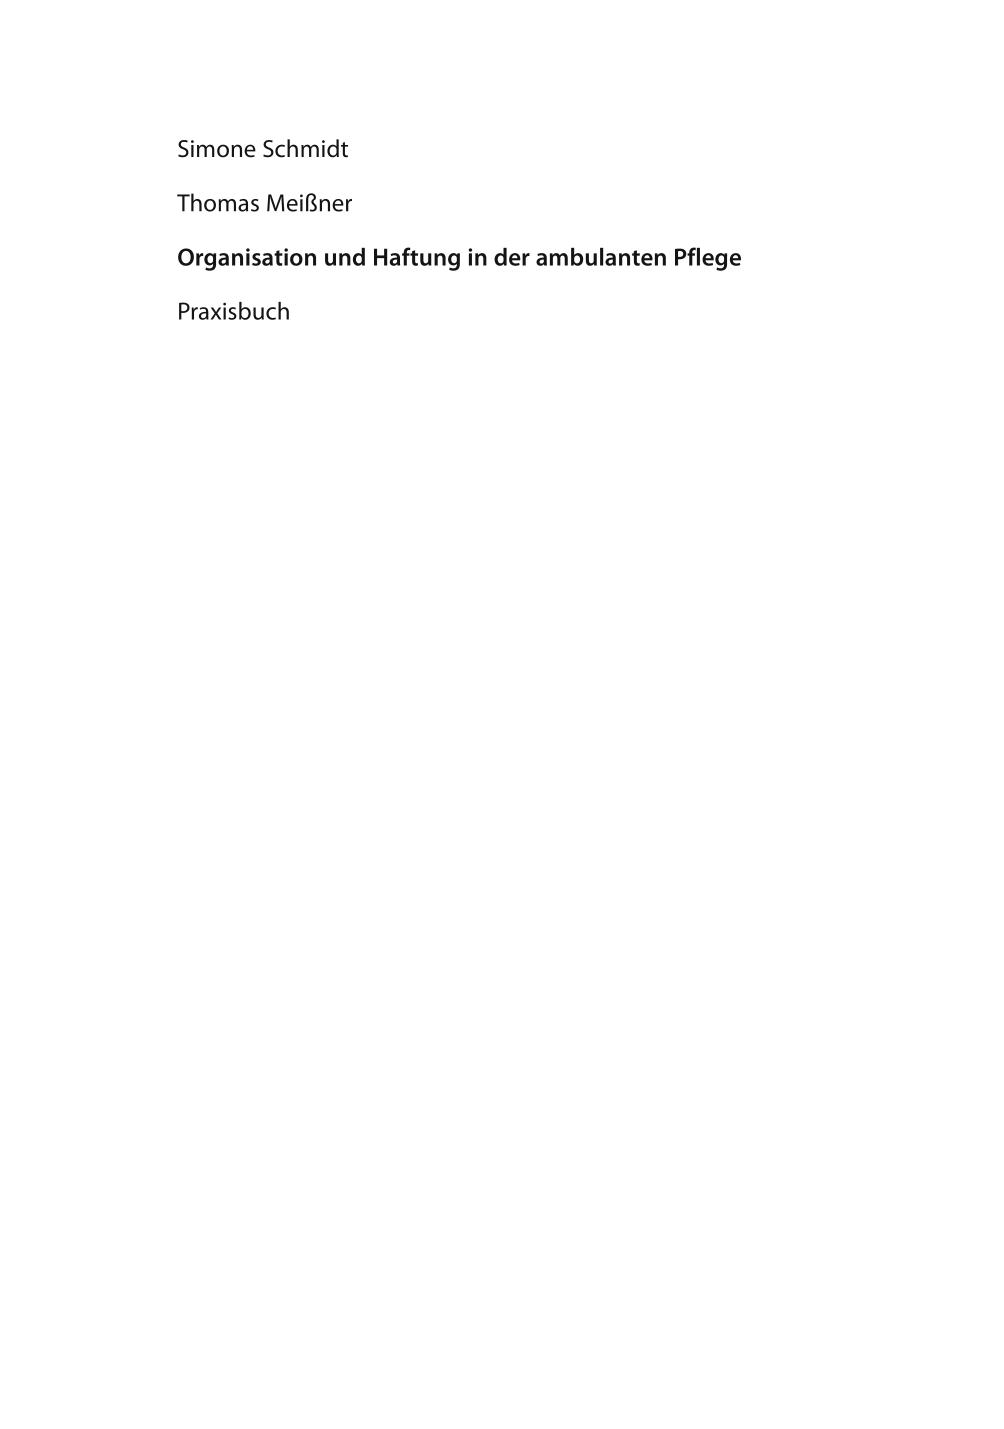 Organisation und Haftung in der ambulanten Pflege : Praxisbuch